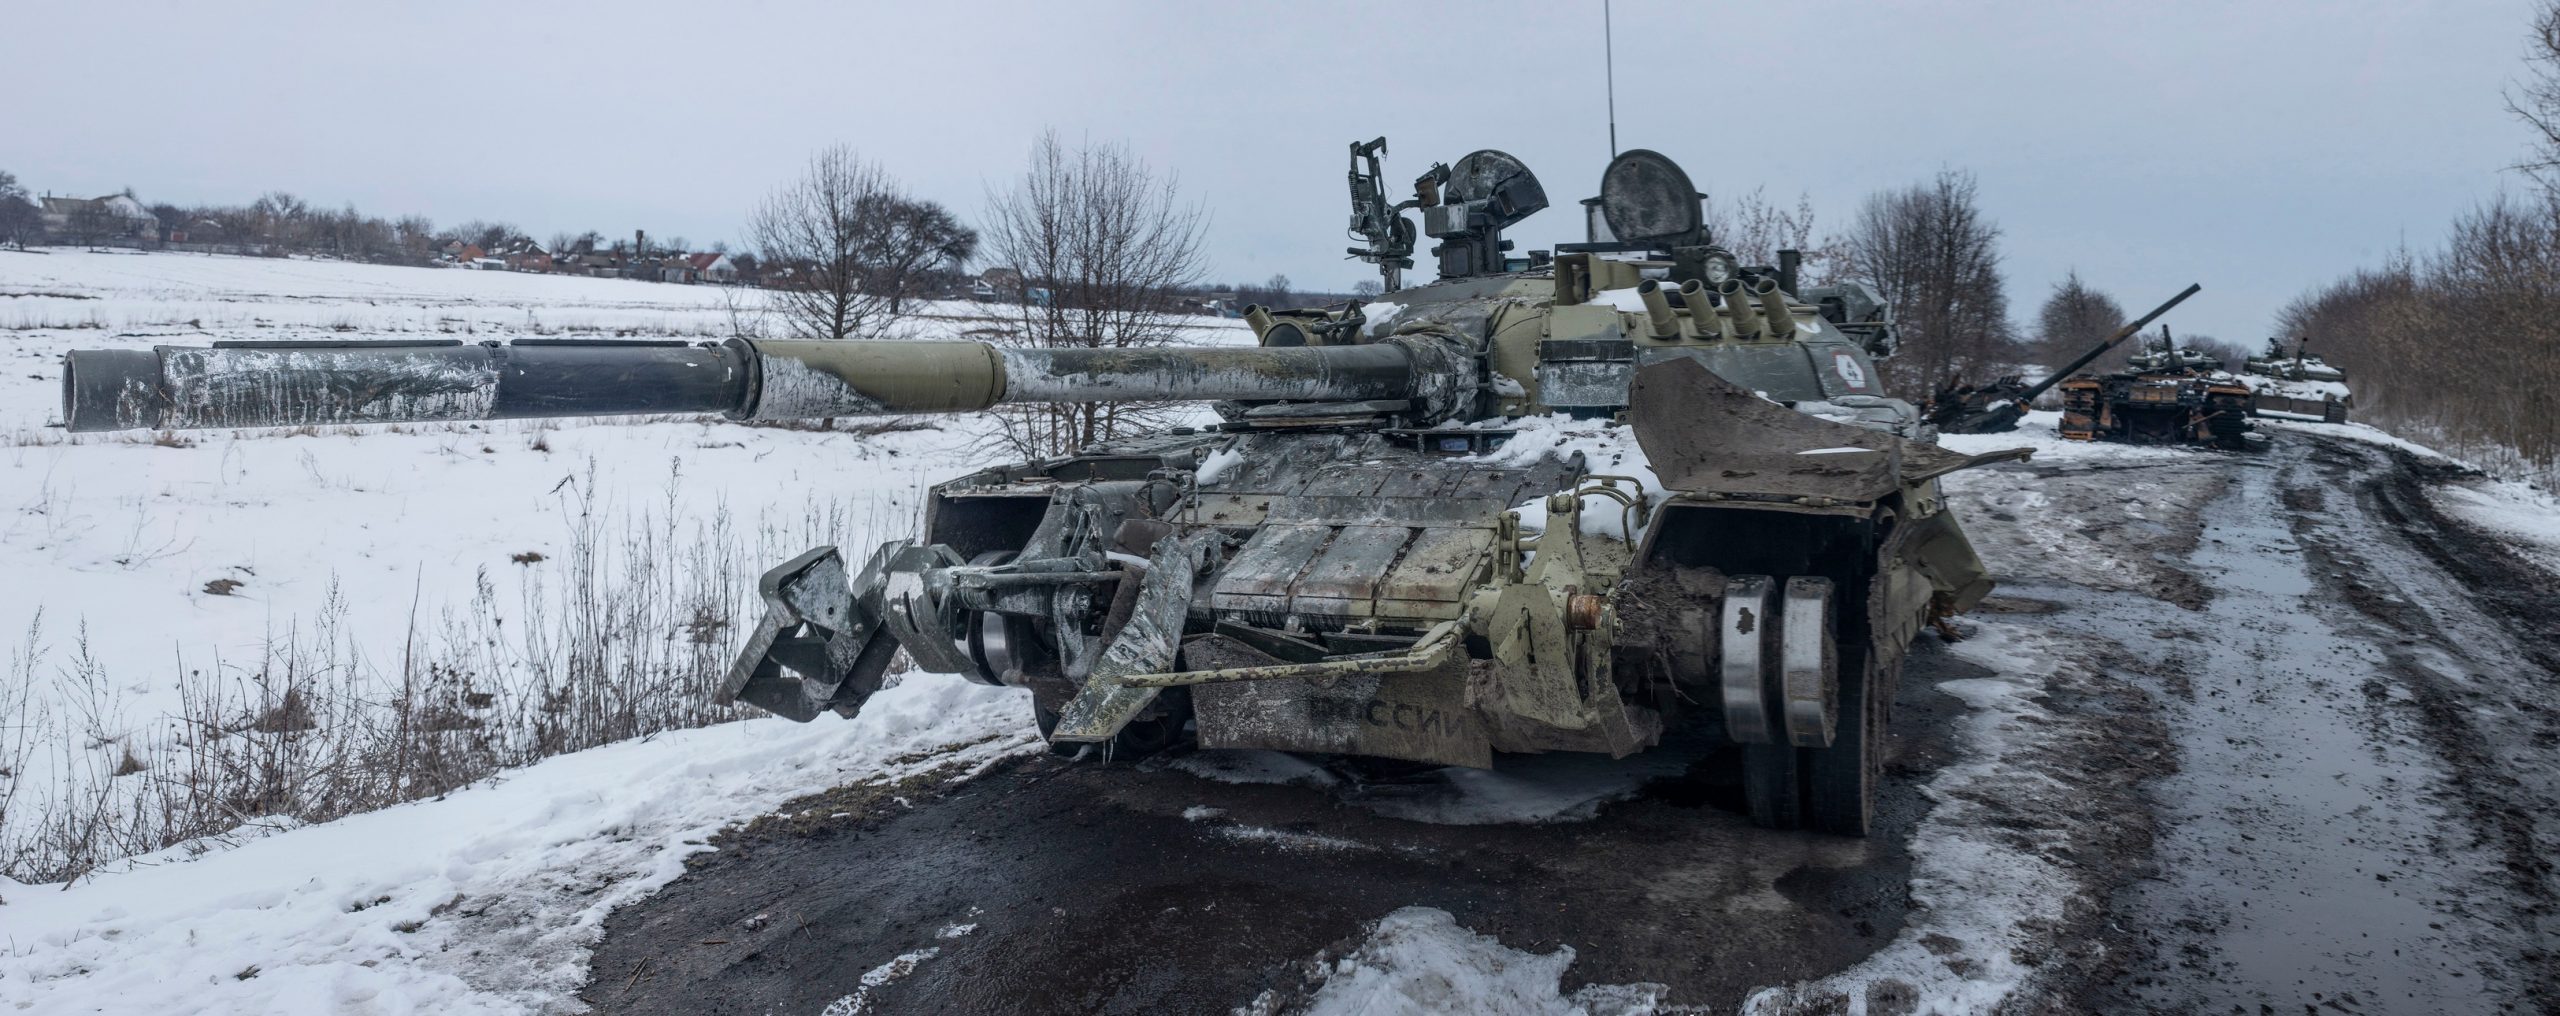 Знищена колона танків моделі Т-80У армії Росії. Березень 2022